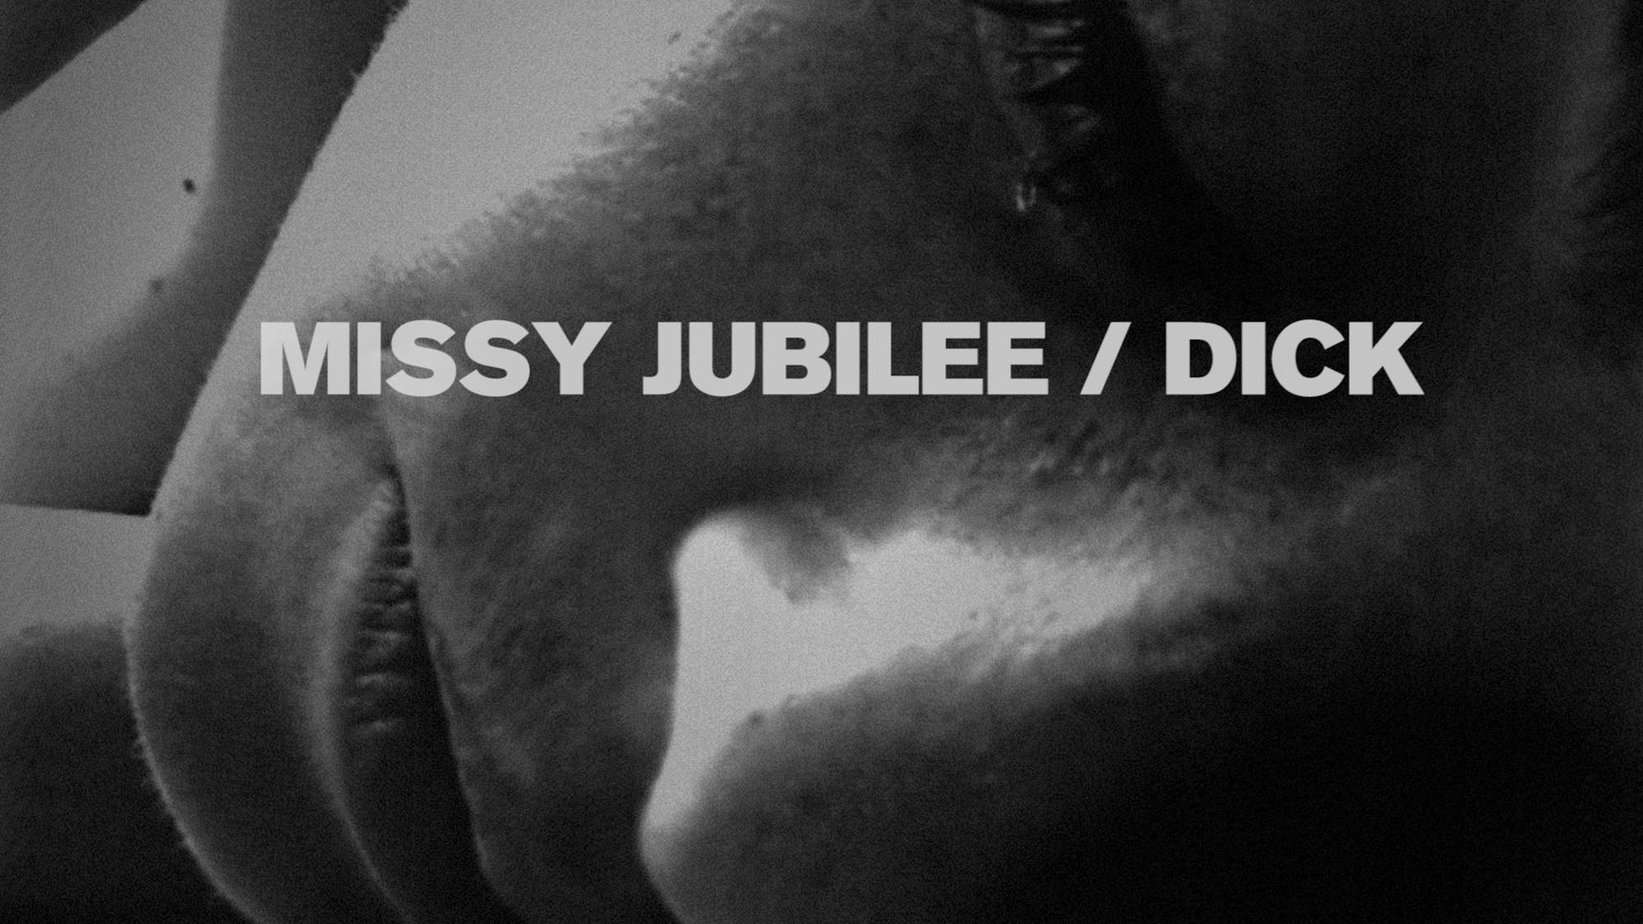 Missy Jubilee 121 DICK film release poster